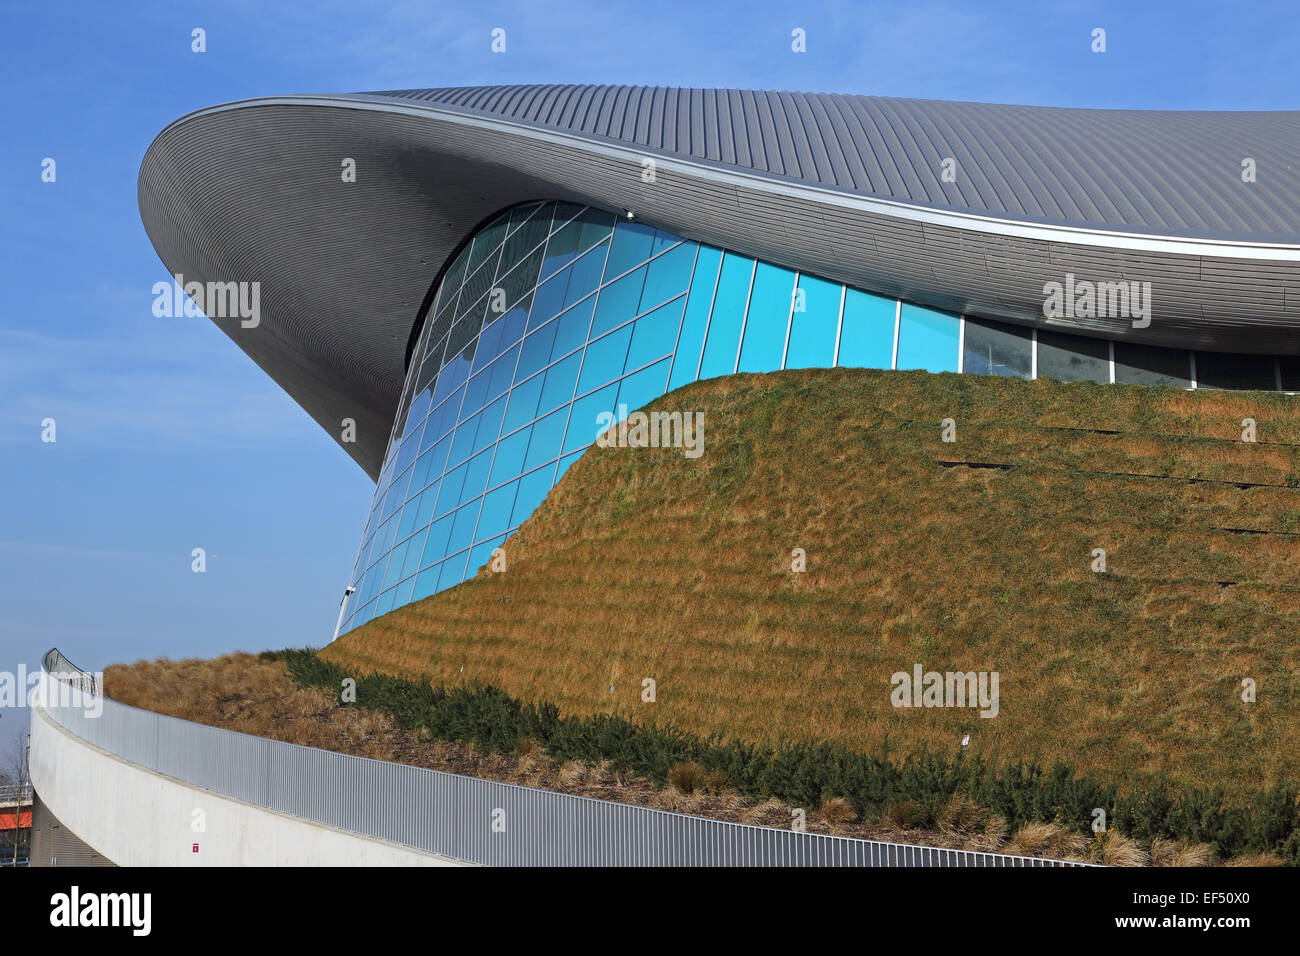 Olimpici di Londra centro acquatico che mostra vivente tetto di erba, concreta struttura del tetto e vetri. Sede temporanea ali rimosso. Foto Stock